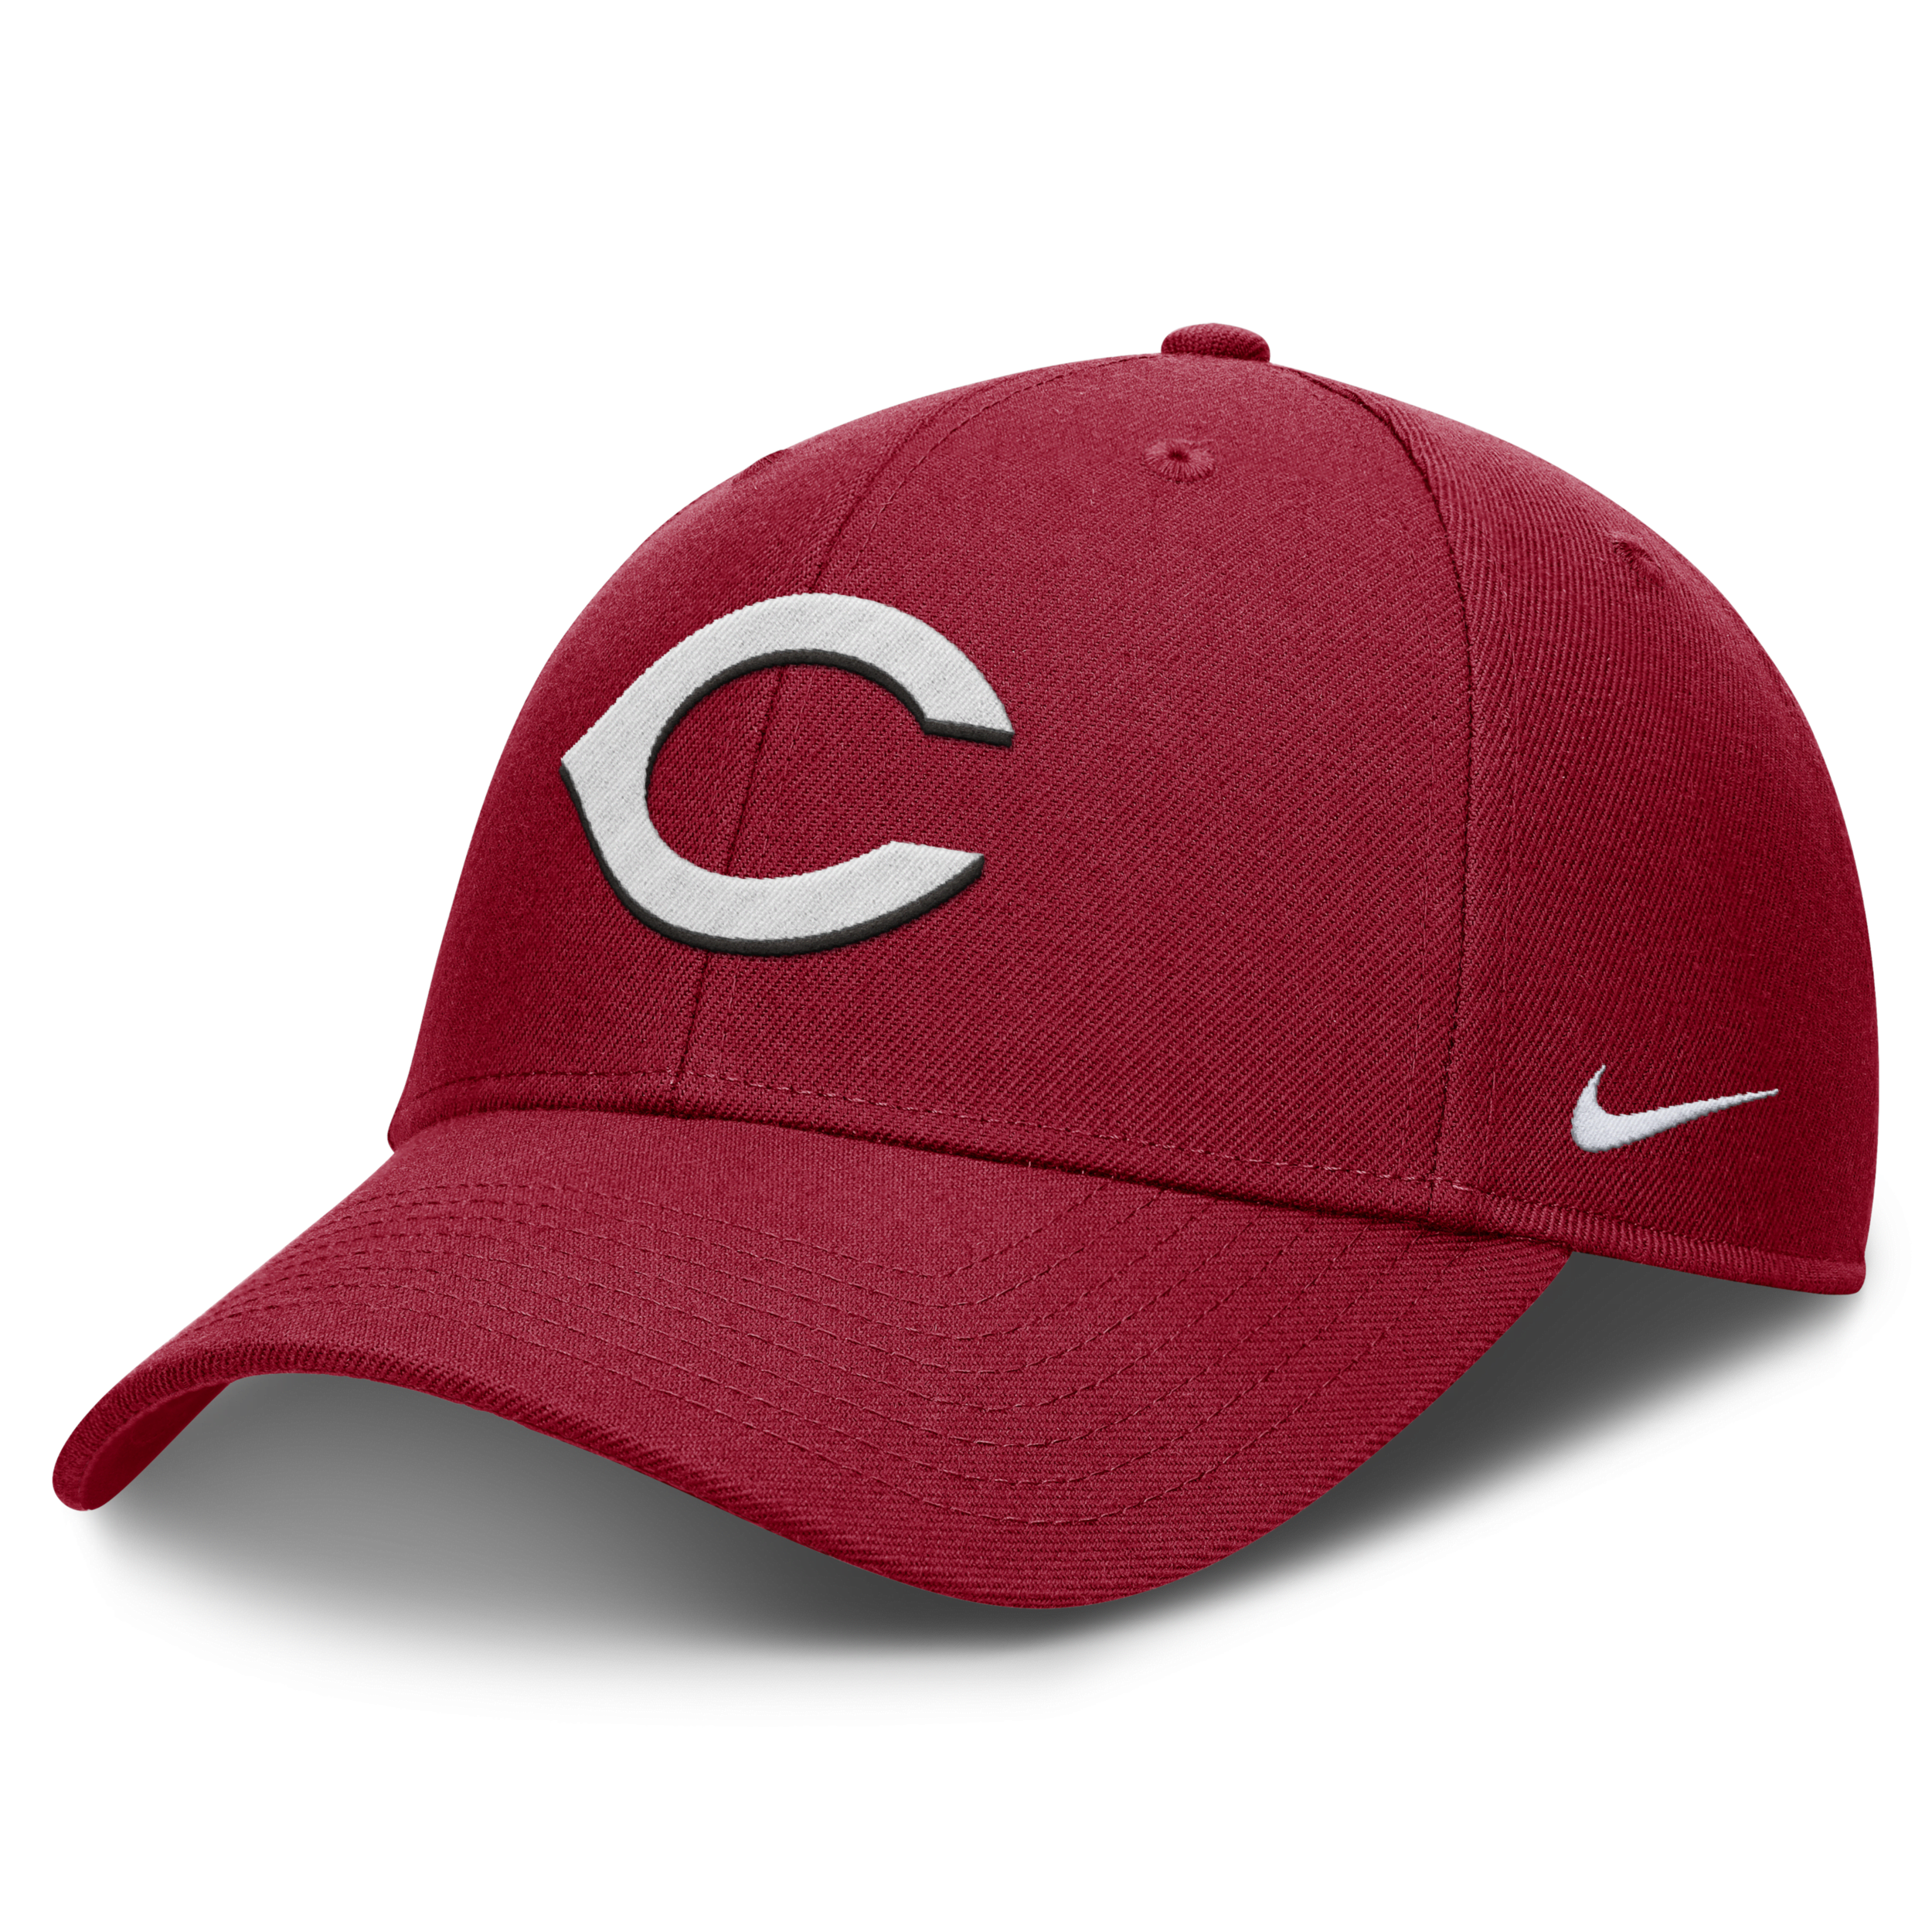 NIKE CINCINNATI REDS EVERGREEN CLUB  MEN'S DRI-FIT MLB ADJUSTABLE HAT,1015595122